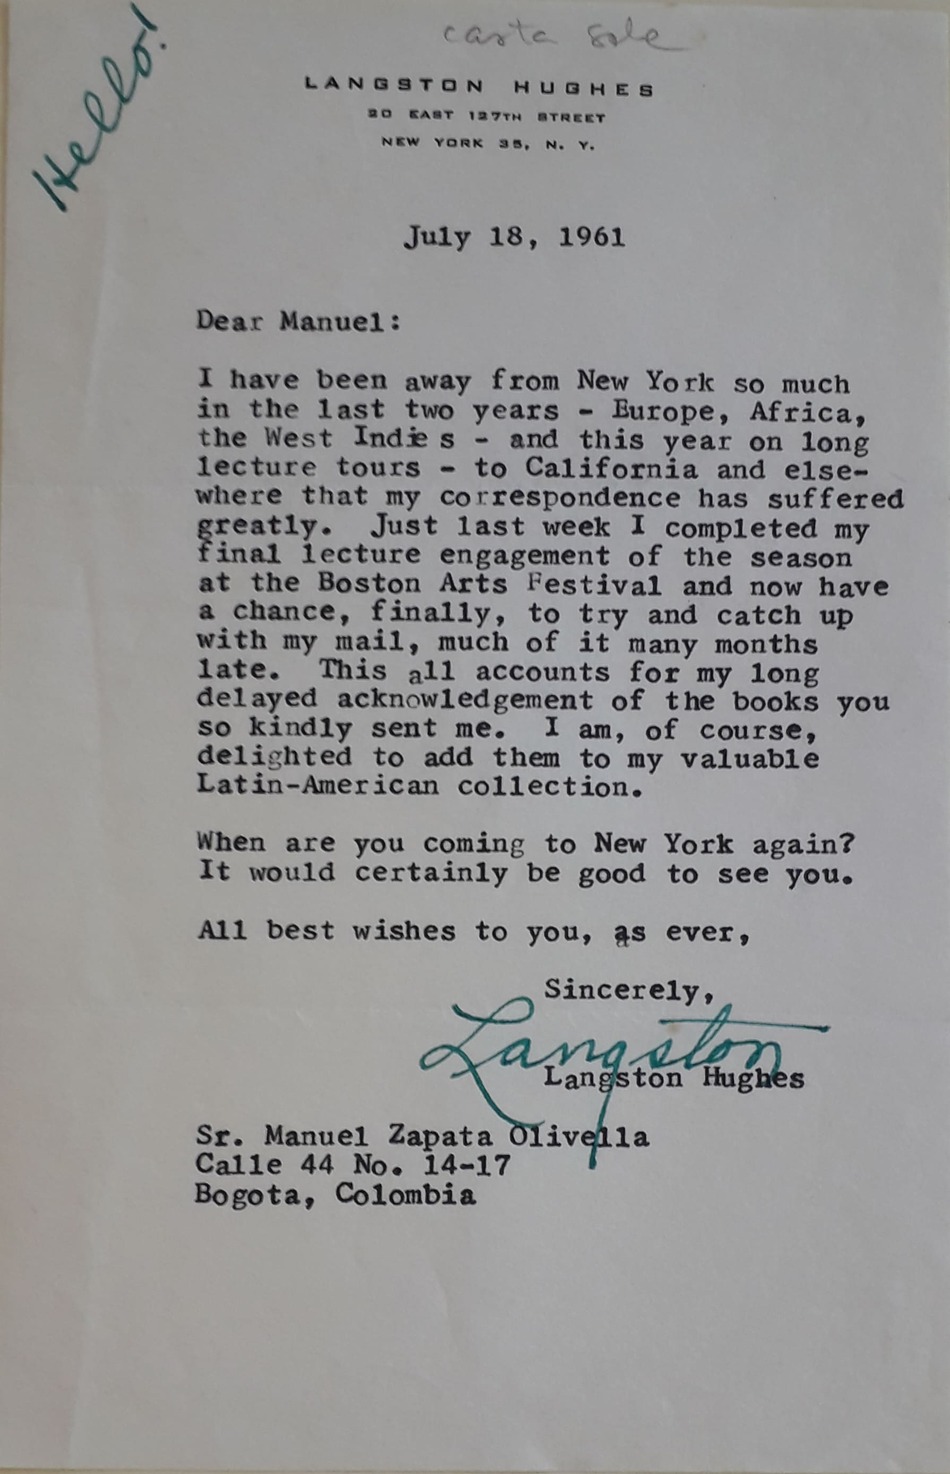 Carta de Lansgton Hughes dirigida a Manuel Zapata Olivella, el 18 de julio de 1961, en la que muestra interés de un nuevo encuentro. Fue enviada desde la residencia del poeta afroamericano.